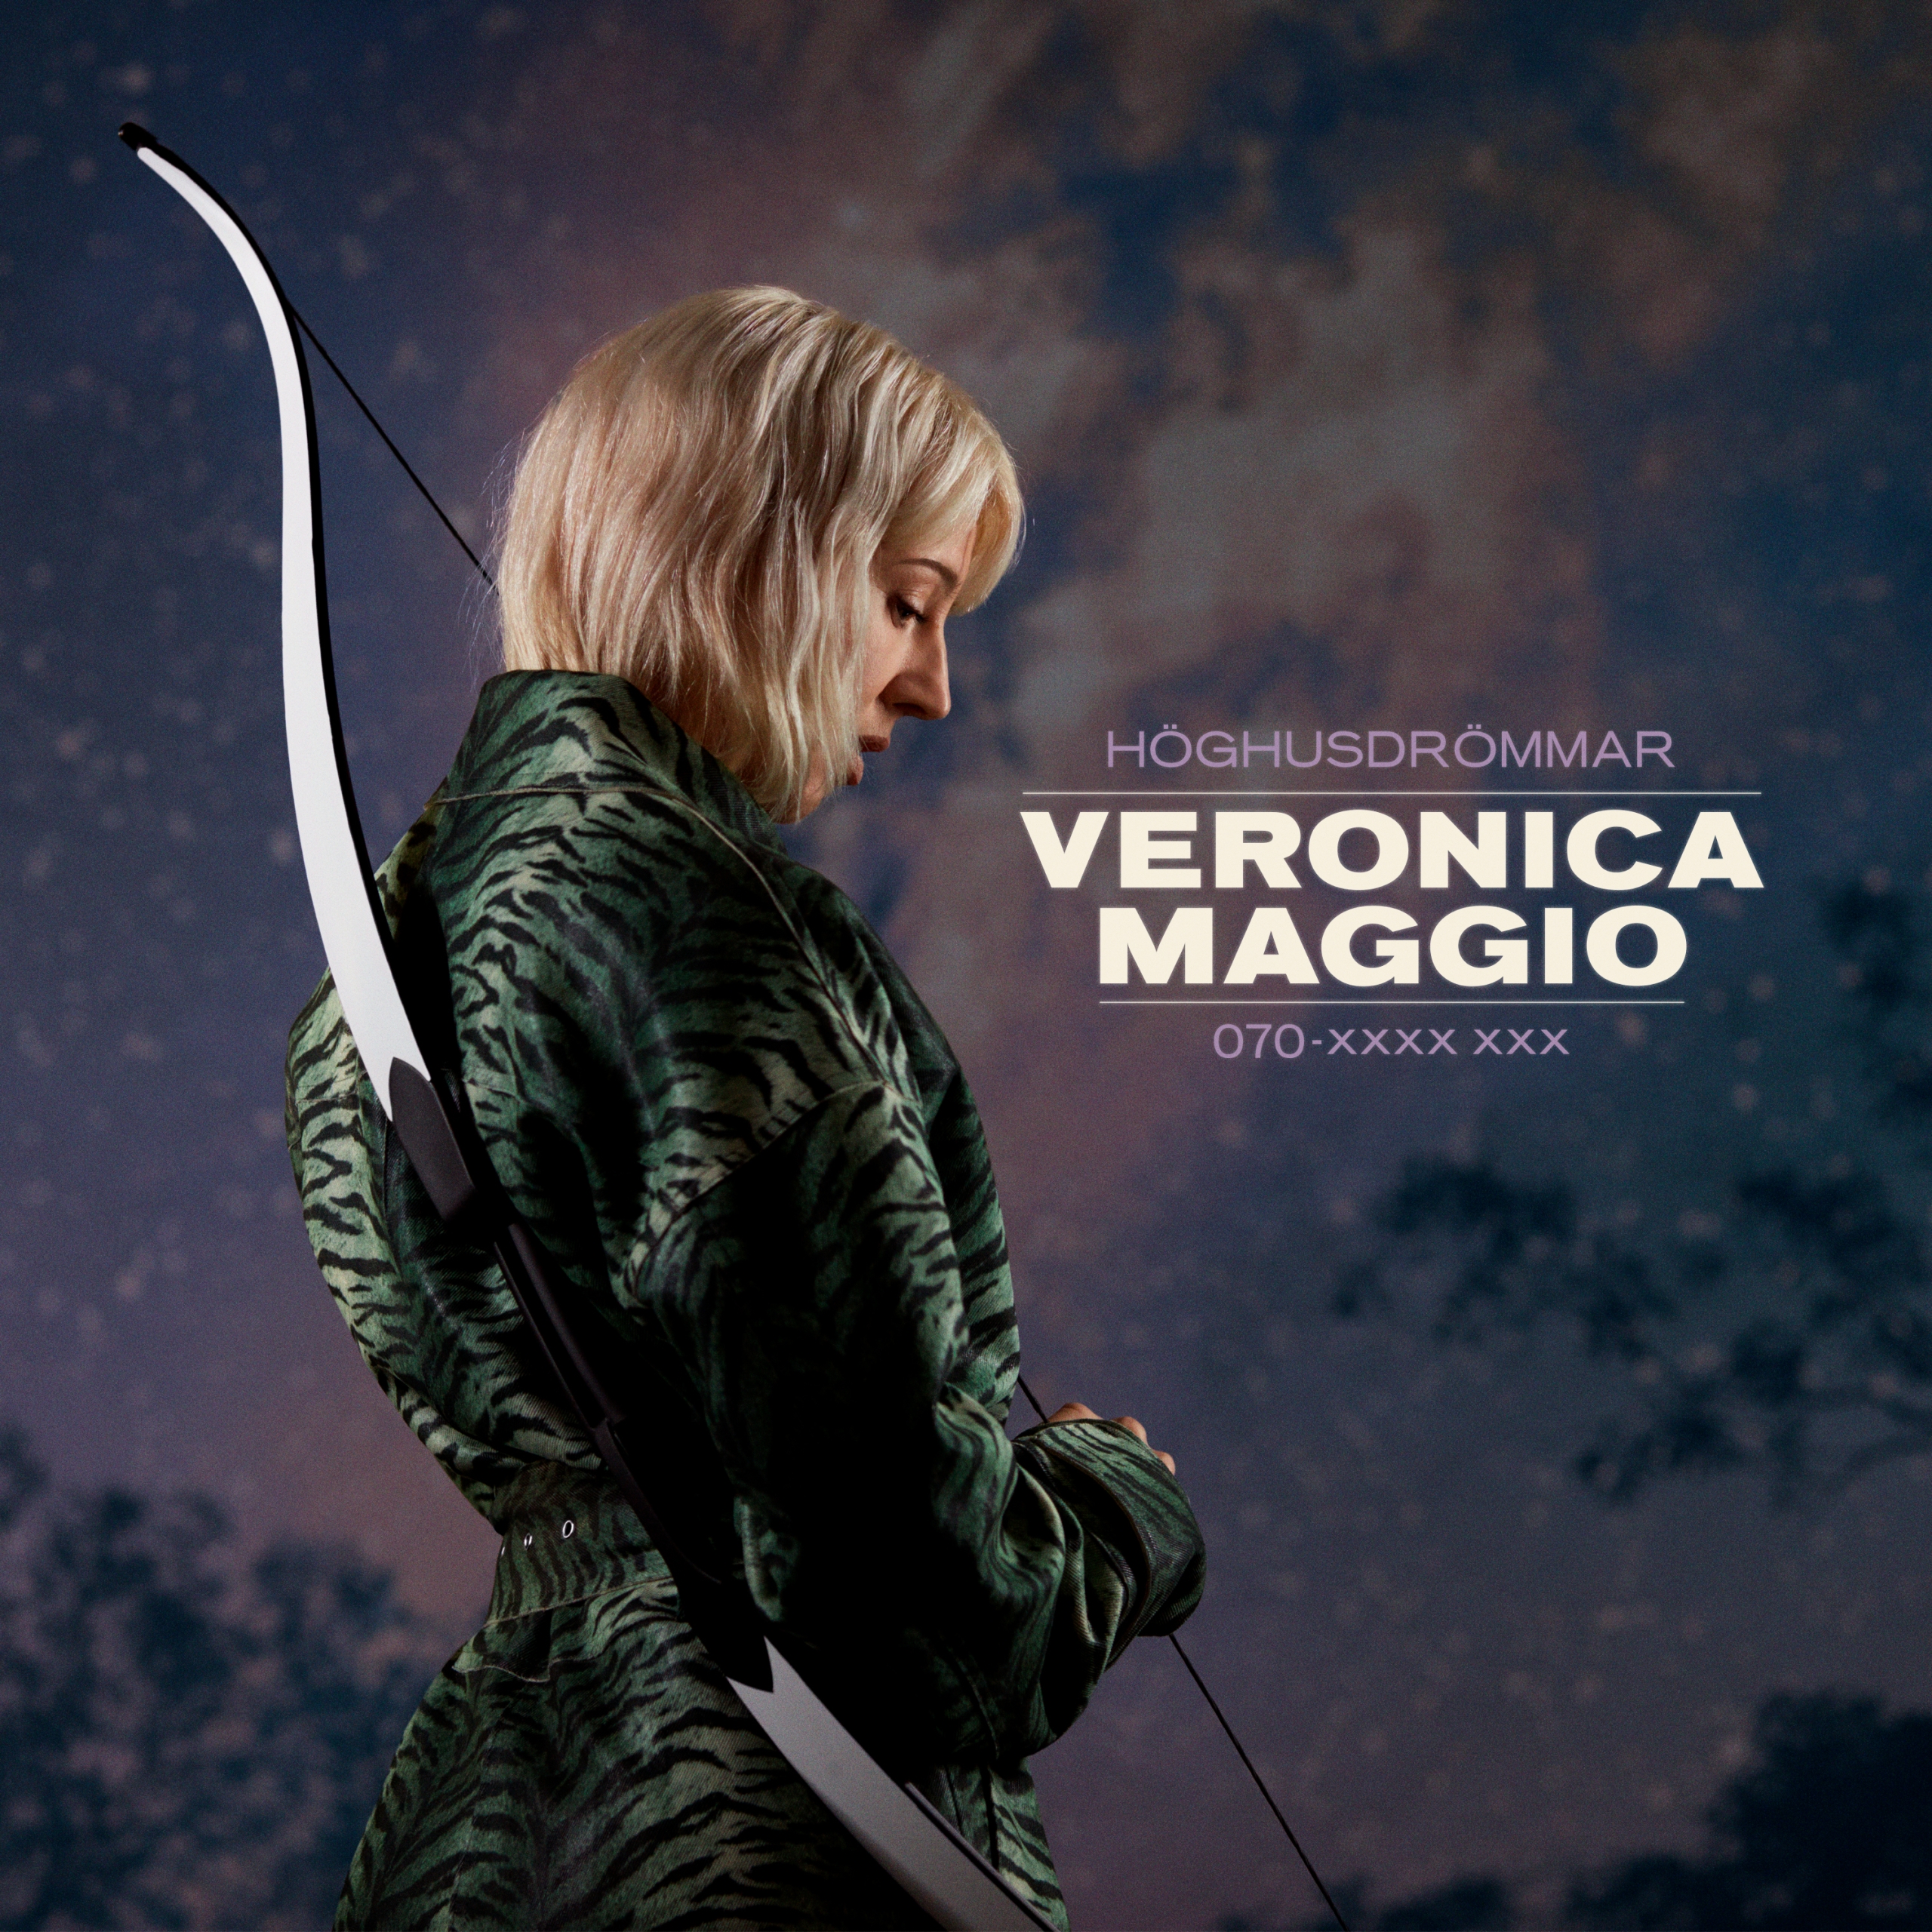 Veronica Maggio — 070-xxxx xxx cover artwork